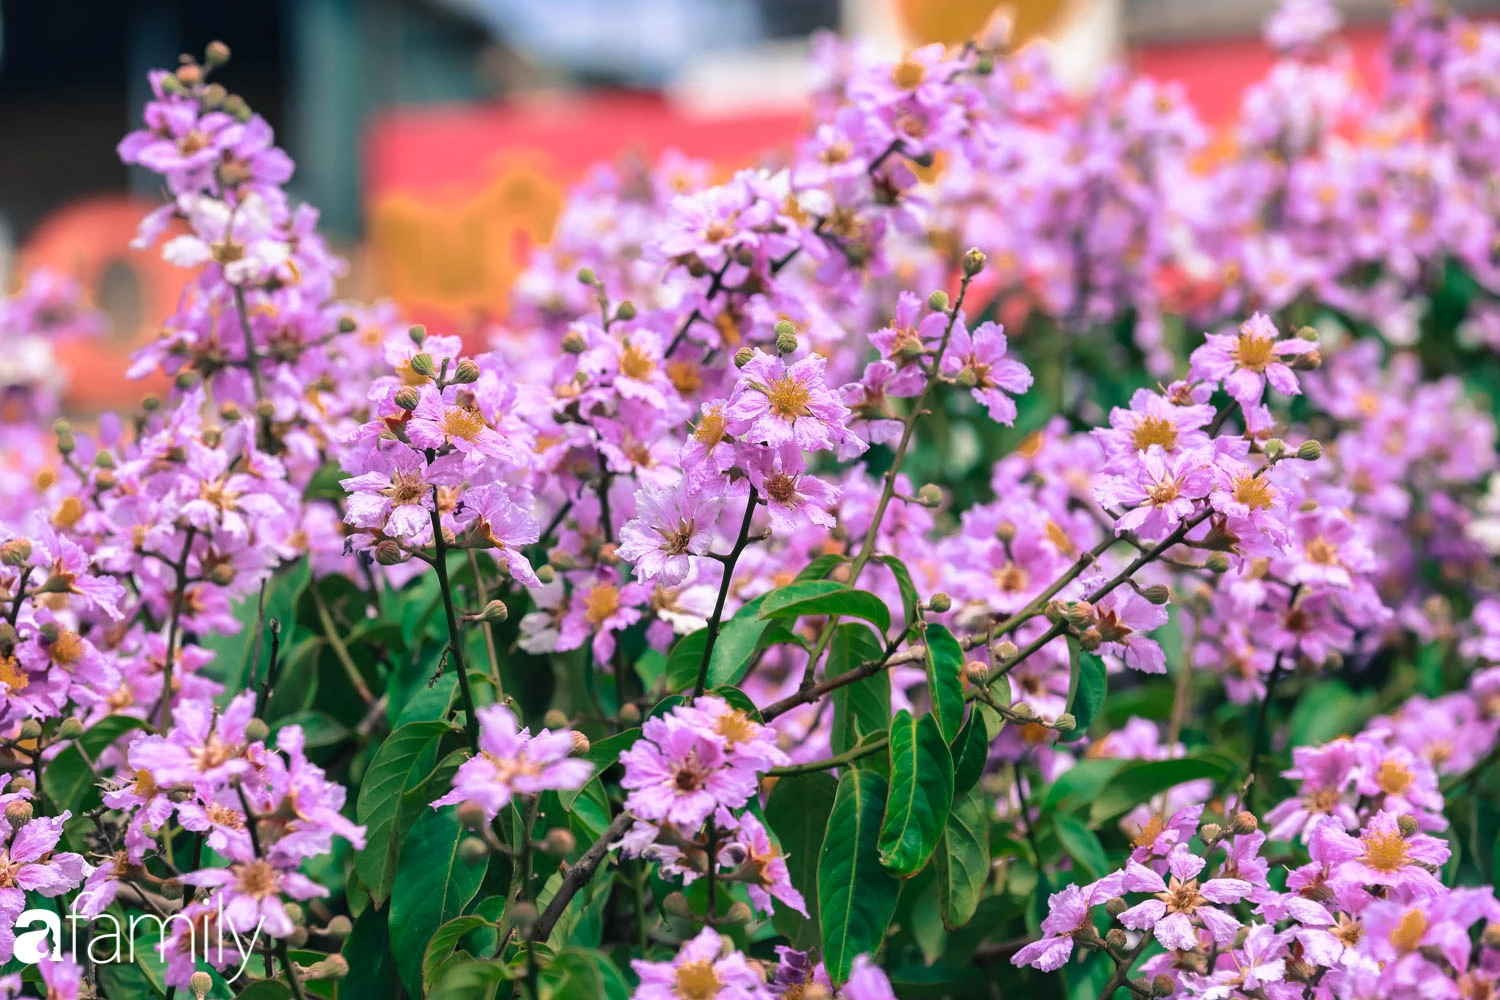 Trở lại cuộc sống bộn bề như trước, có mấy ai nhận ra Hà Nội đang trong một mùa hoa bằng lăng đẹp tuyệt vời - Ảnh 11.